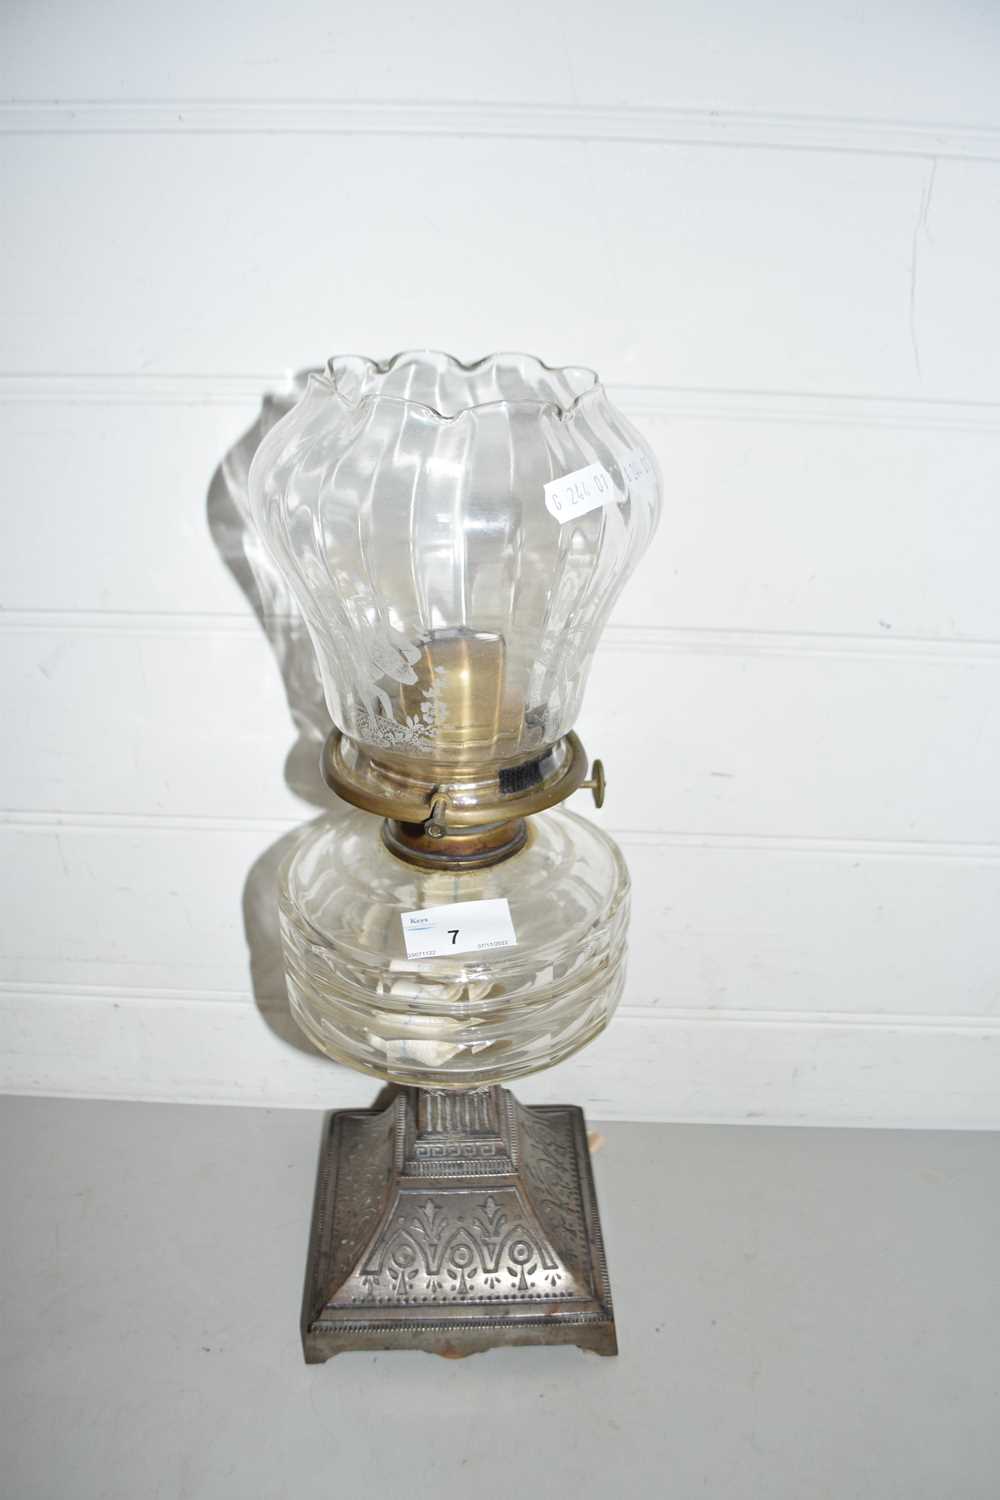 Metal based oil lamp